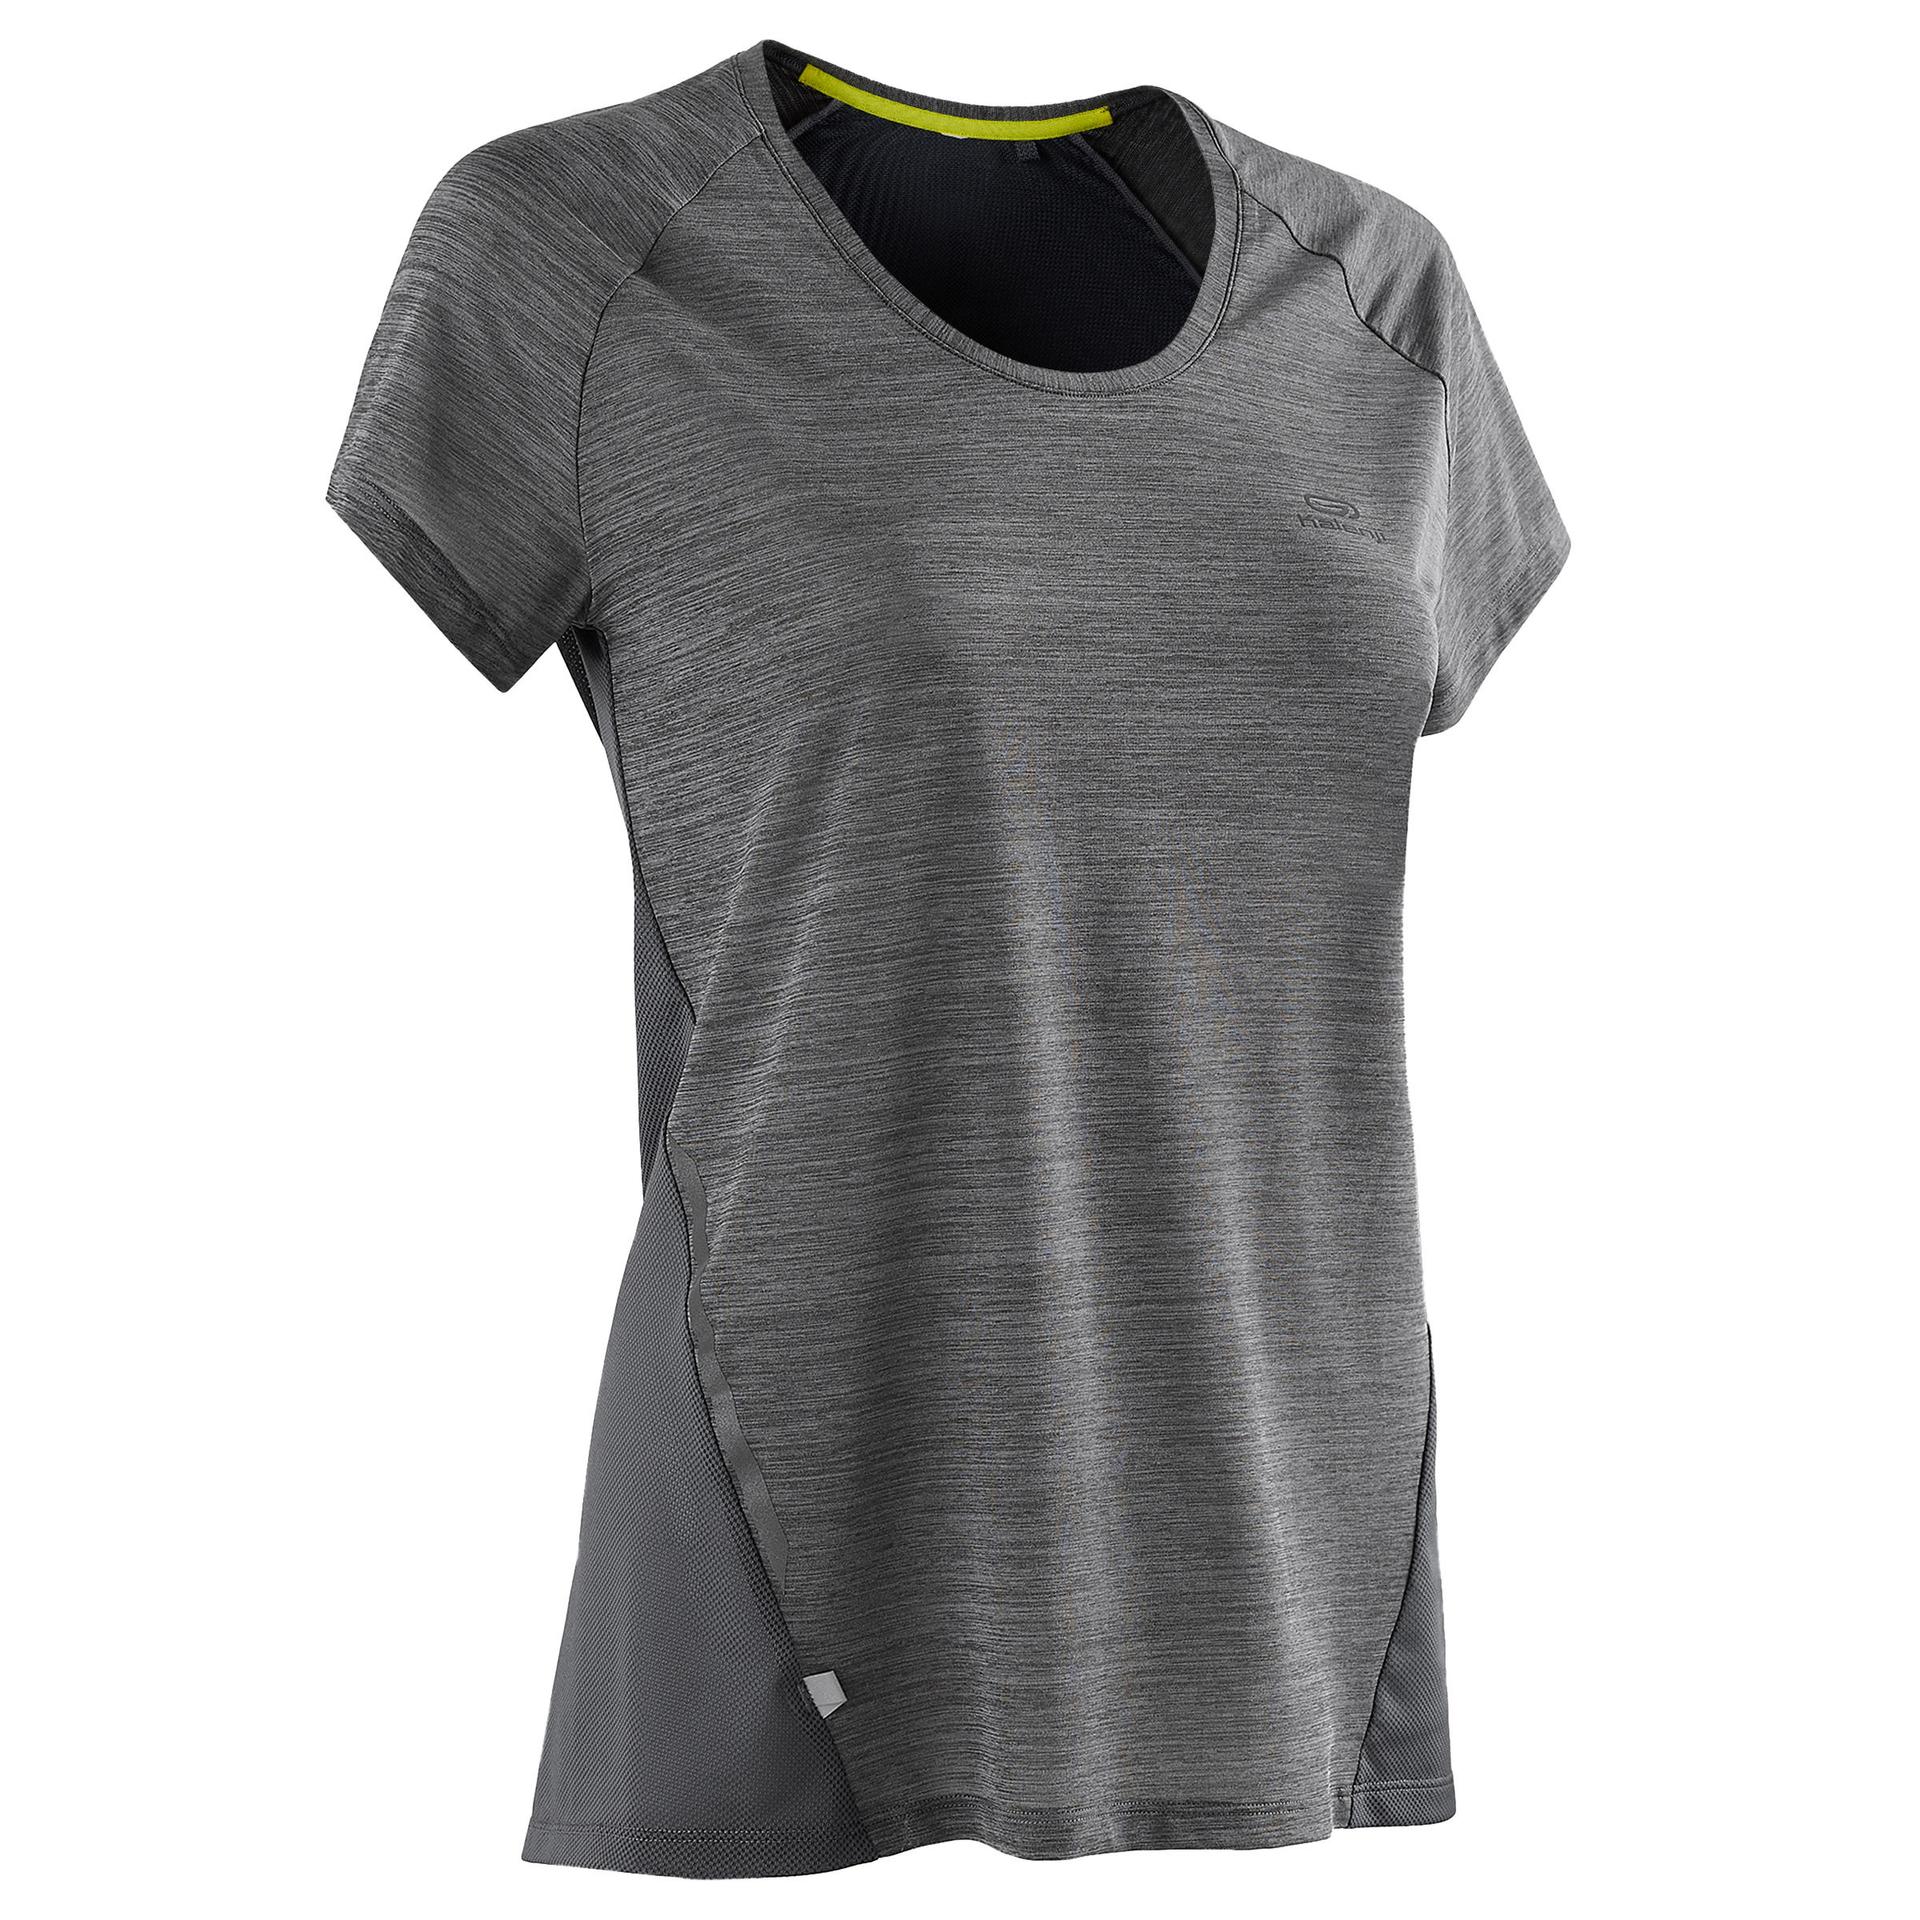 run light women's running t-shirt - grey